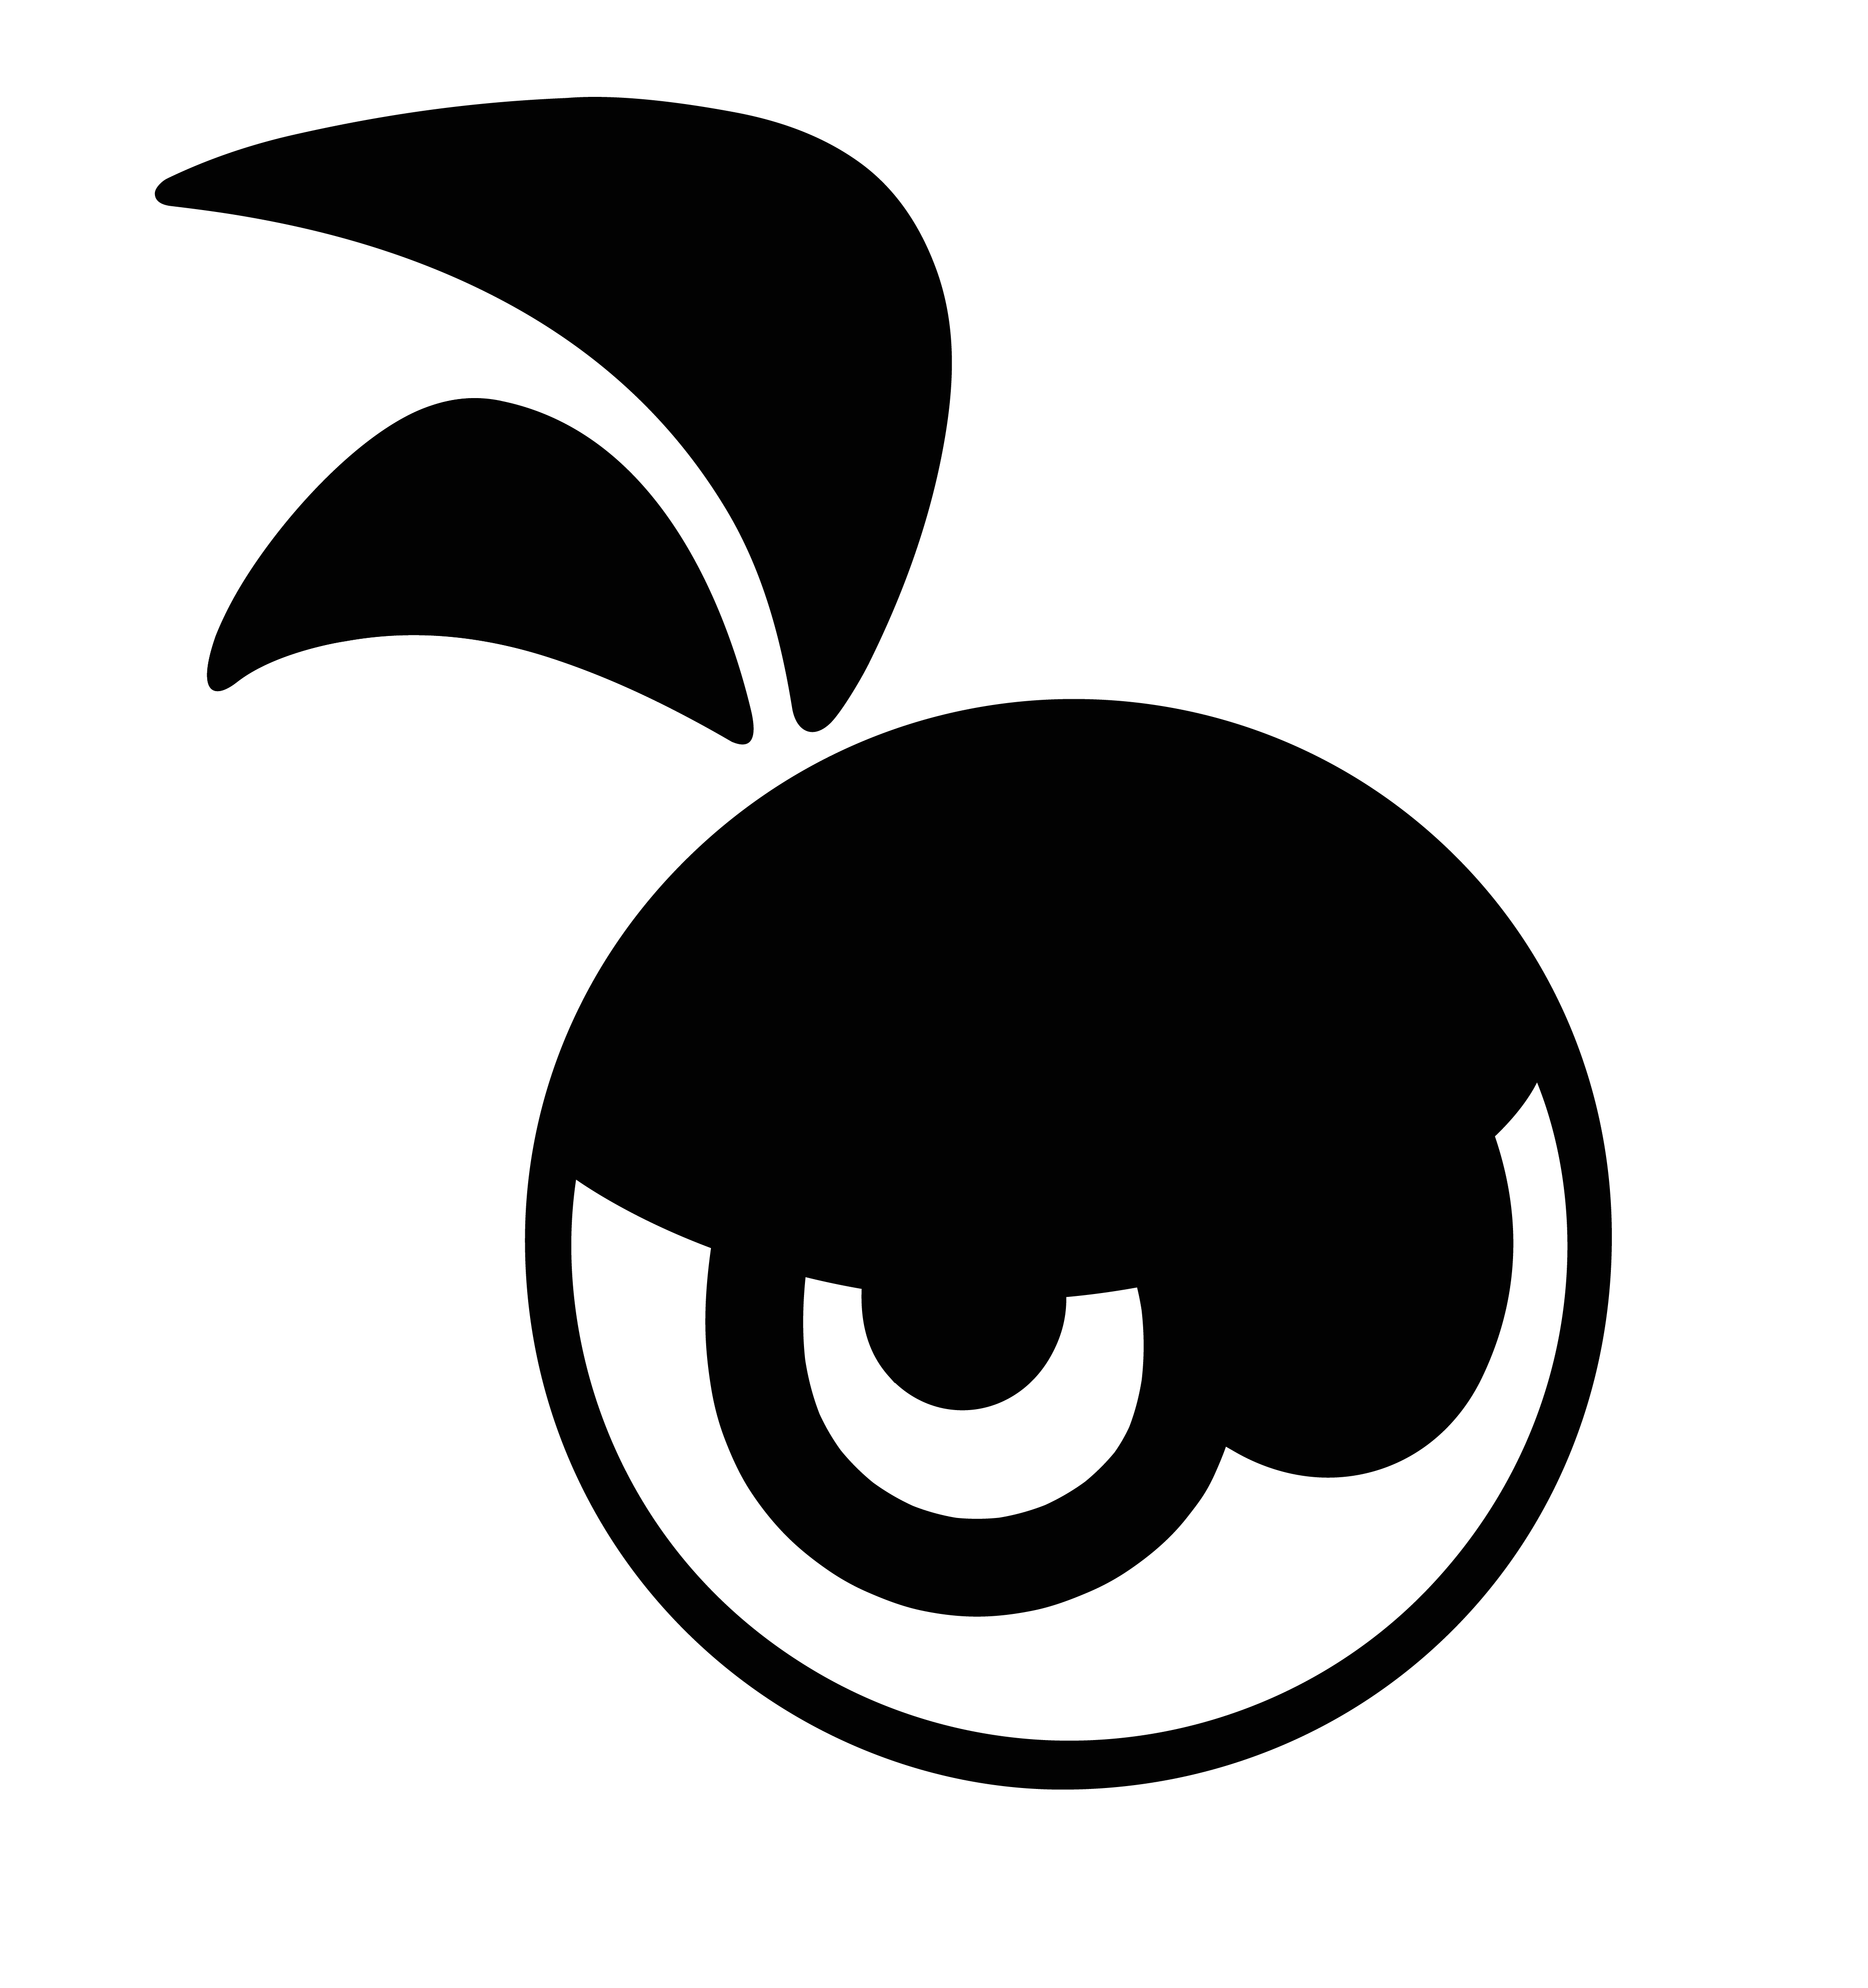 bandabendata-logo-sito